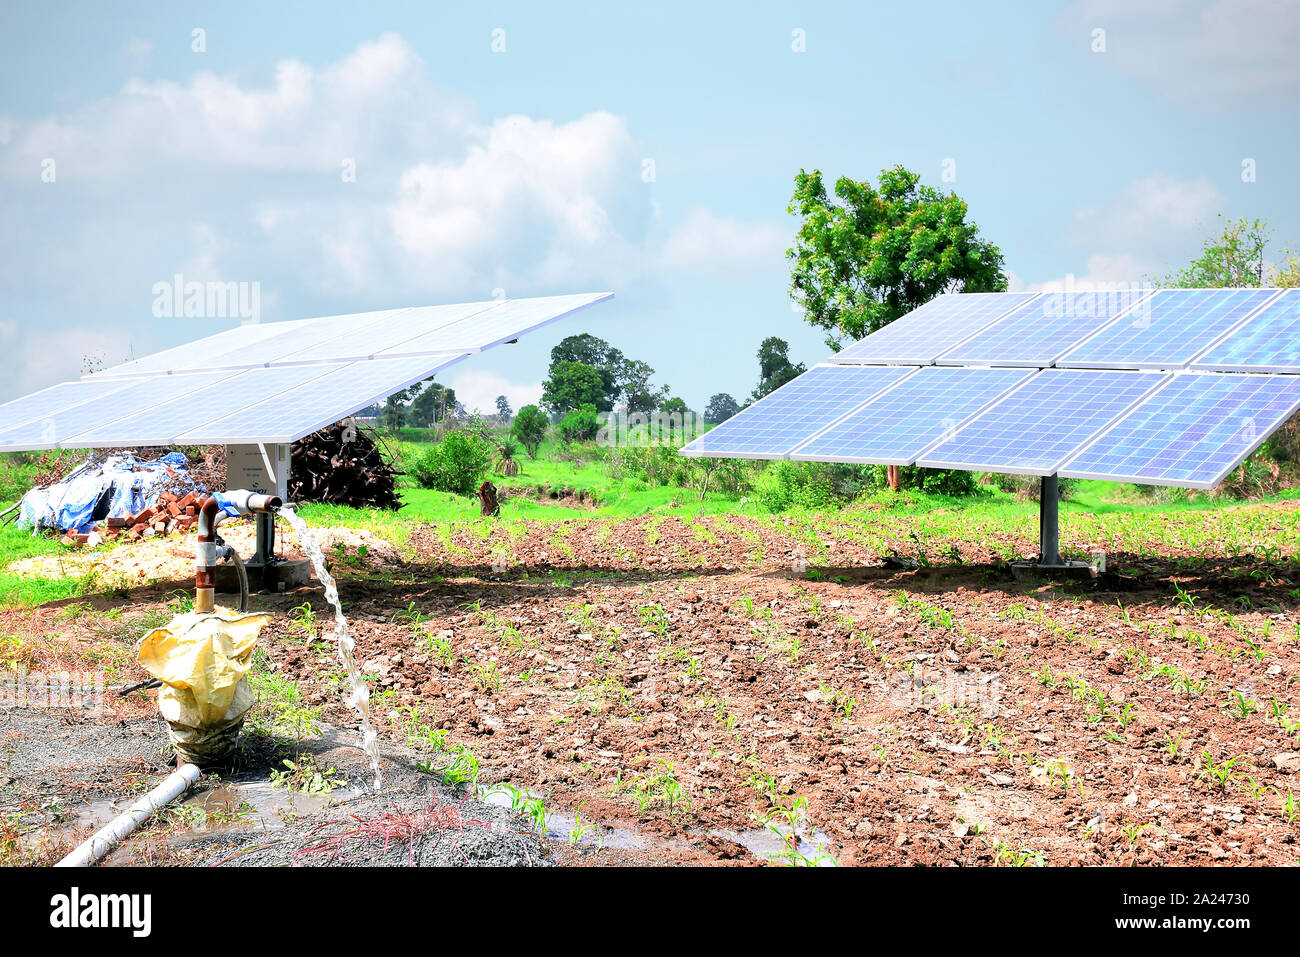 Equipo agrícola para el riego de campo, chorro de agua, detrás de la cual está el panel solar. Foto de stock